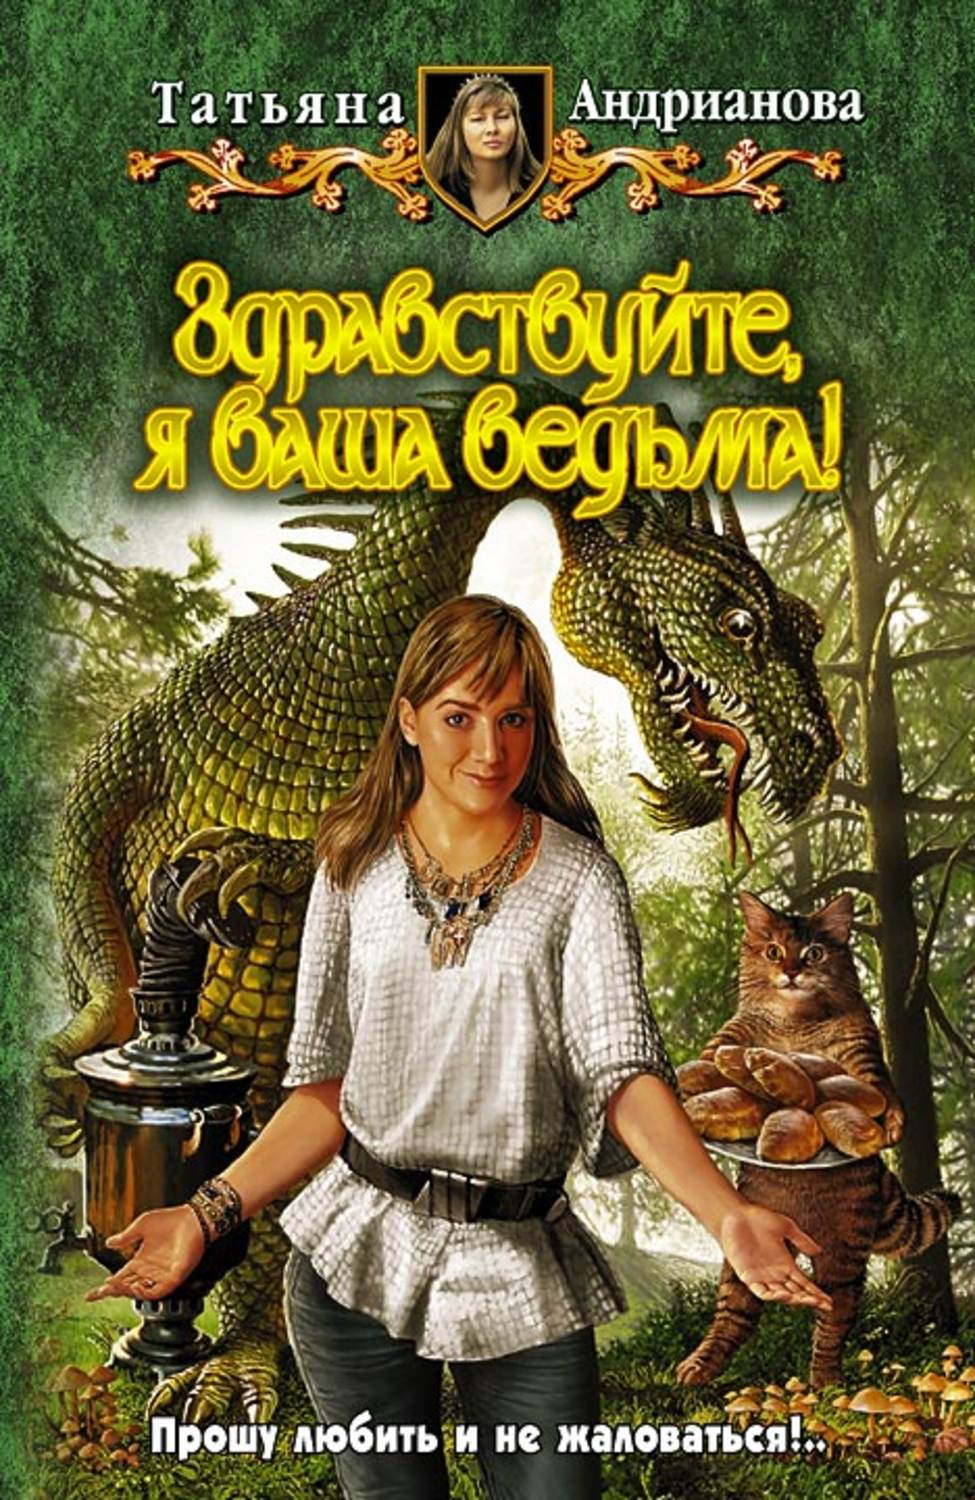 Татьяна коростышевская все книги скачать бесплатно fb2